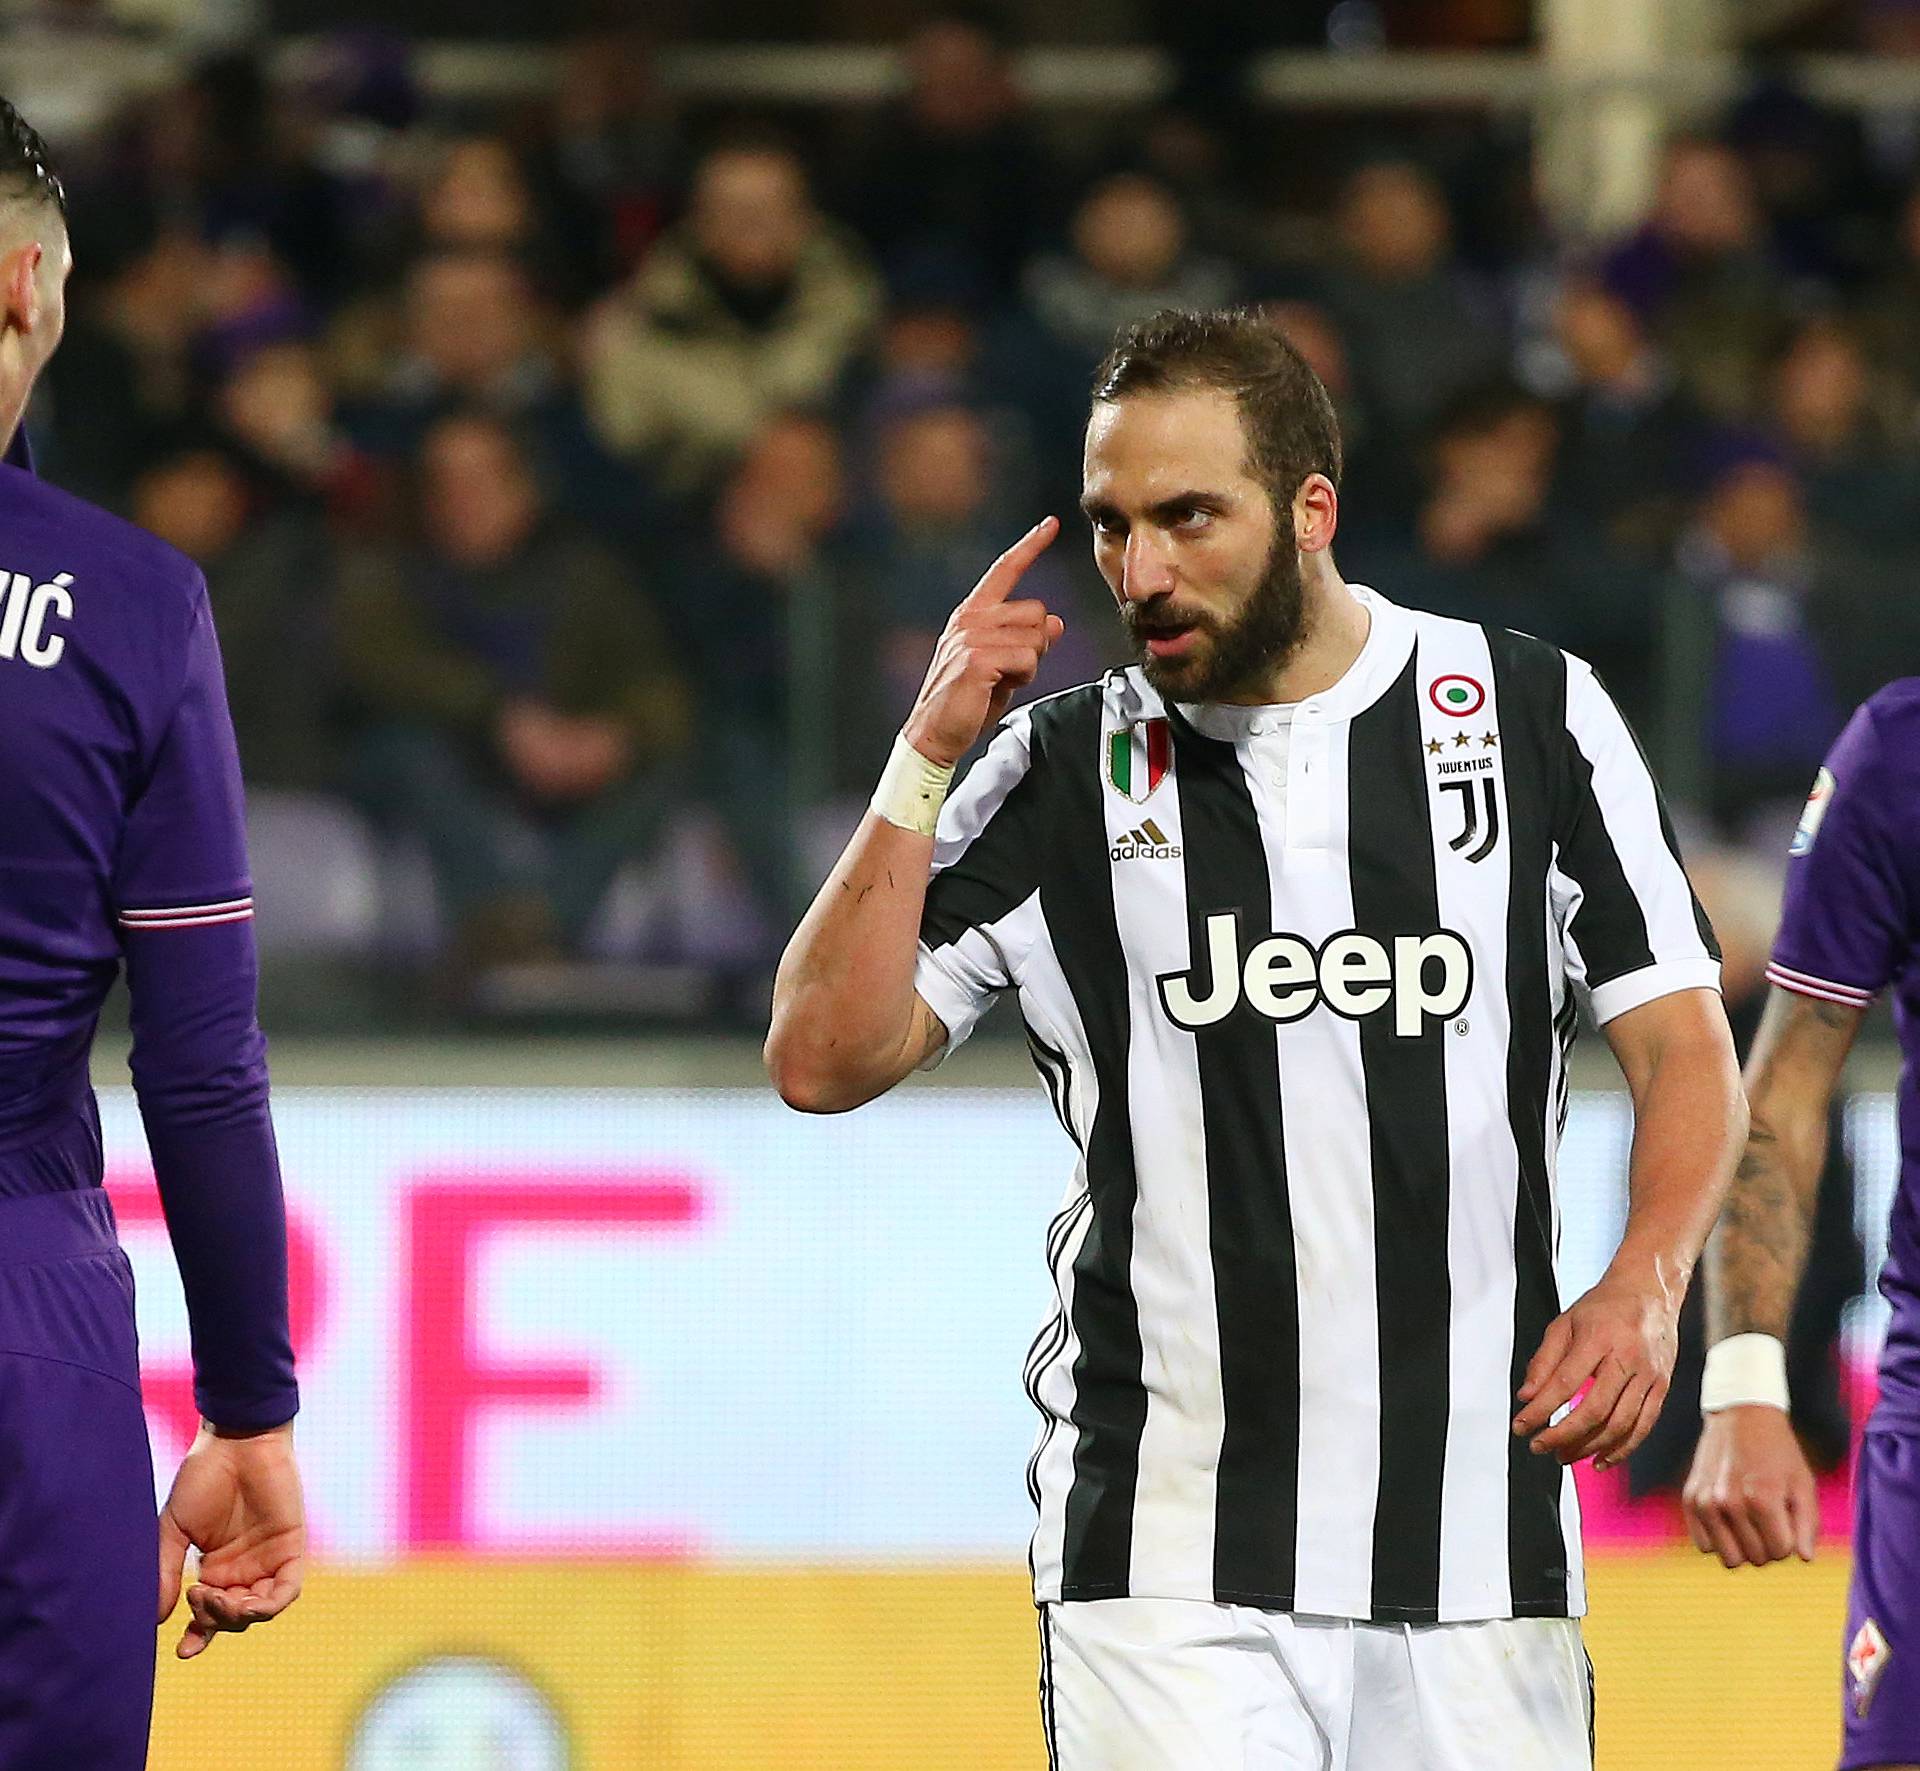 Serie A - Fiorentina vs Juventus